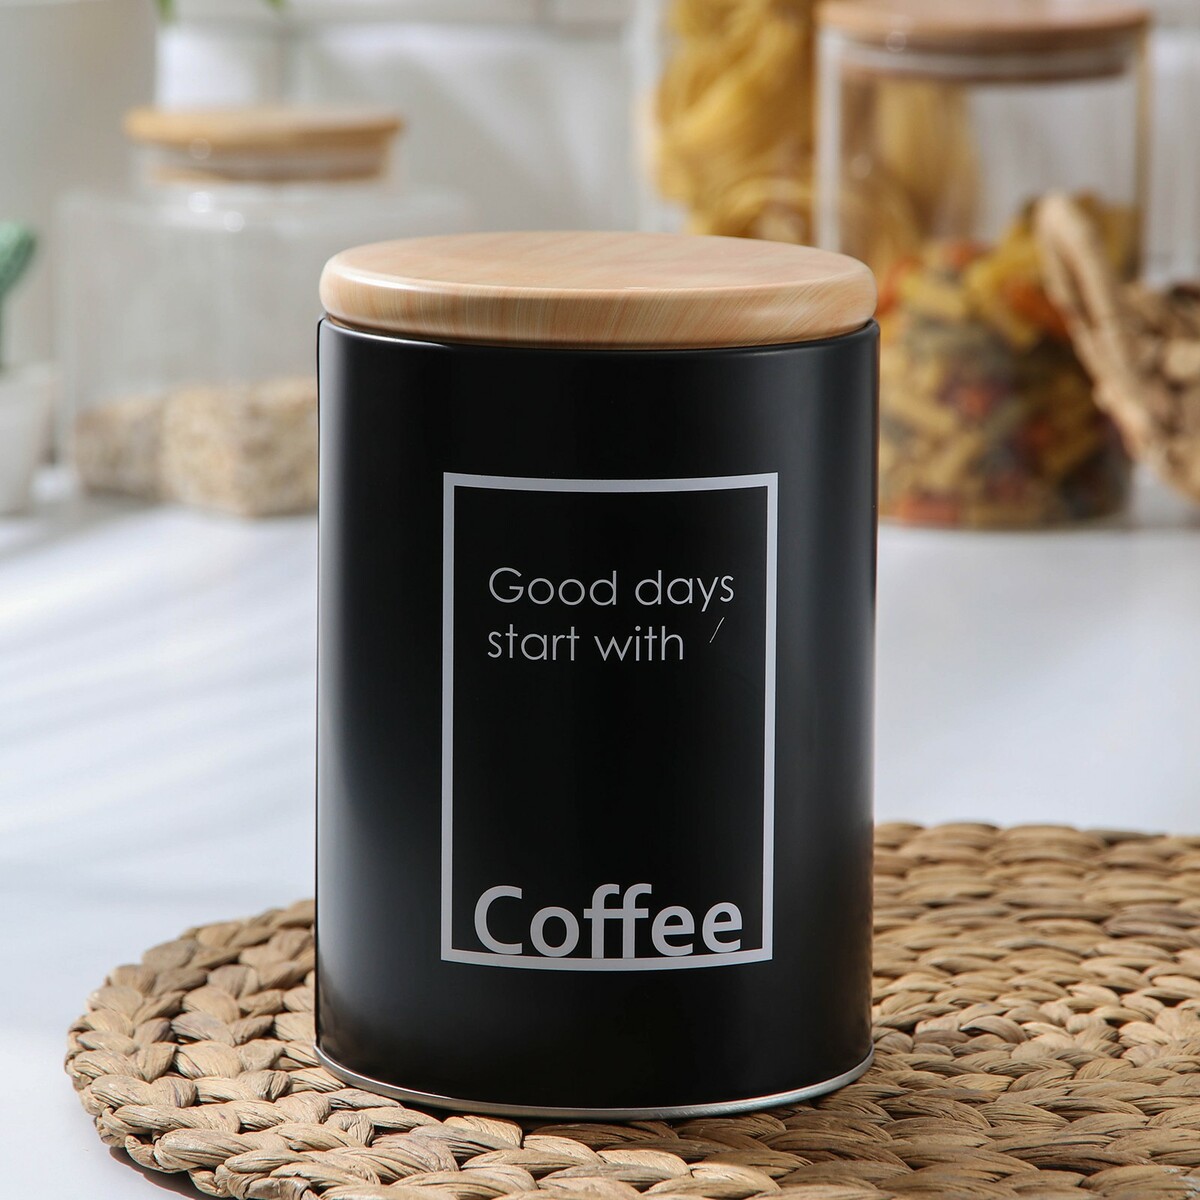 Банка для сыпучих продуктов кофе lifestyle, 11×15,5 см, цвет черный банка для кофе